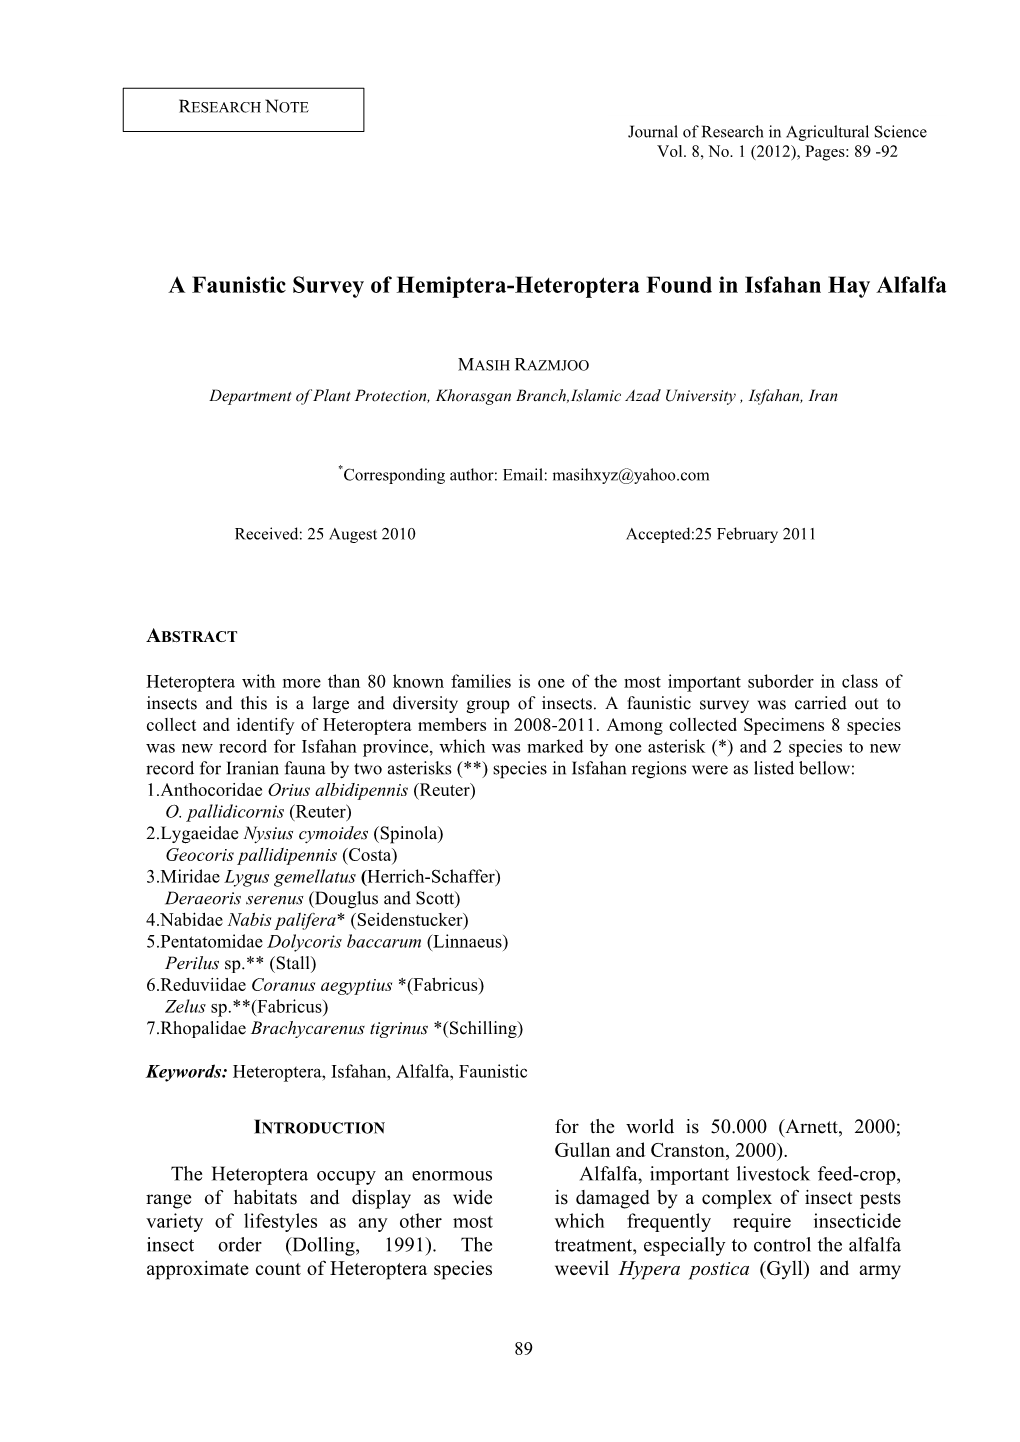 A Faunistic Survey of Hemiptera-Heteroptera Found in Isfahan Hay Alfalfa